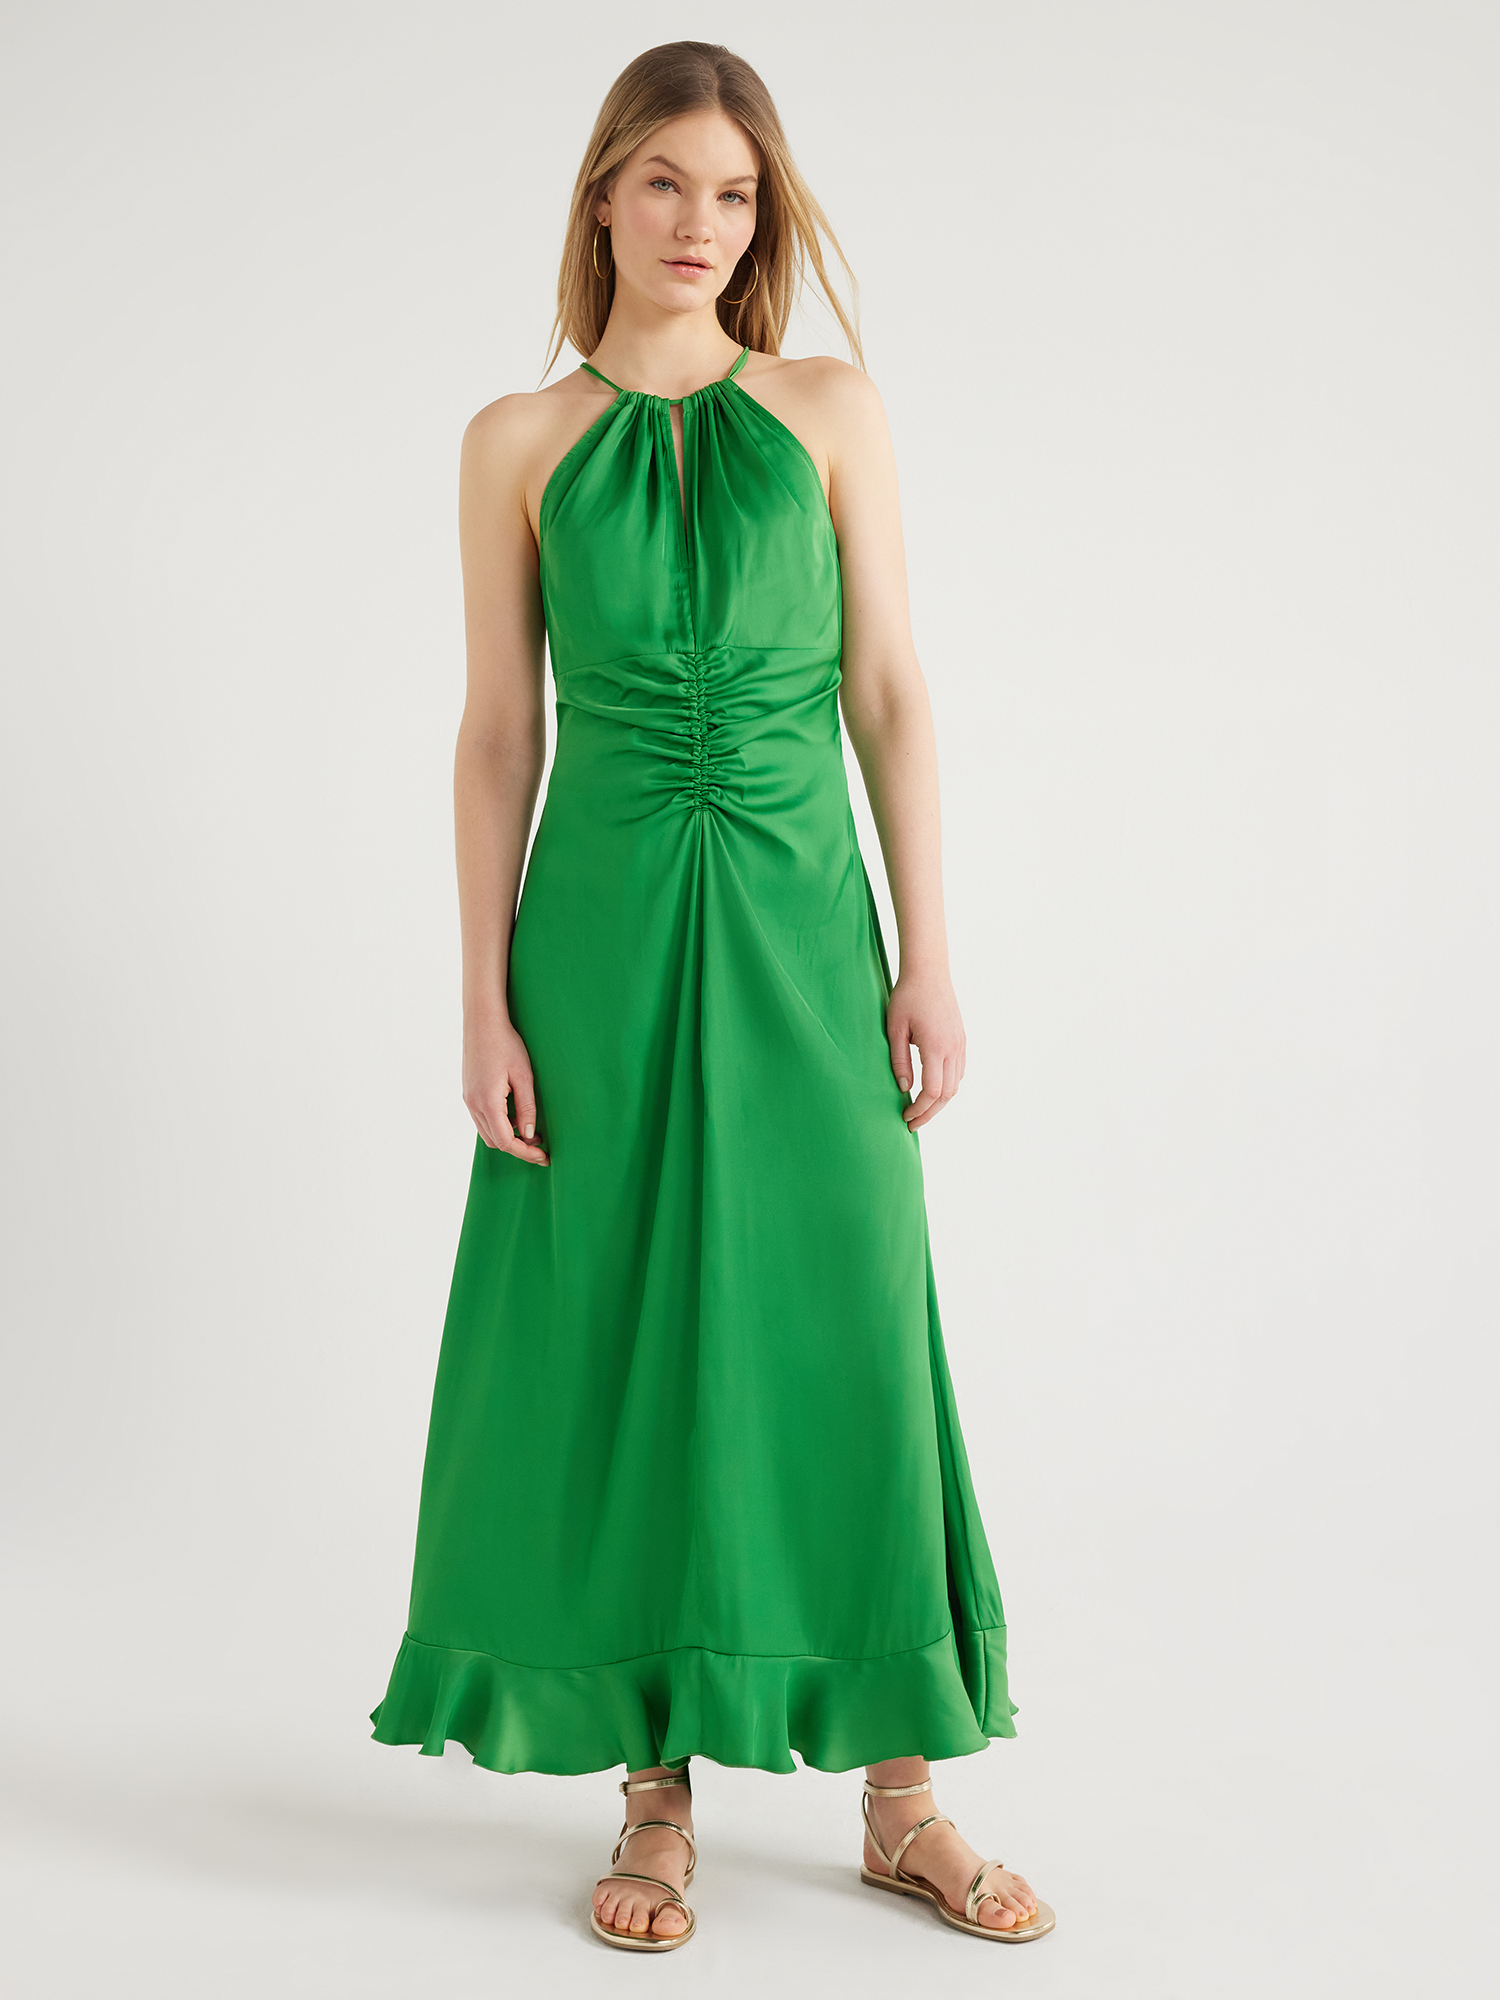 Scoop Women's Ruched Halter Dress, Sizes XS-XXL